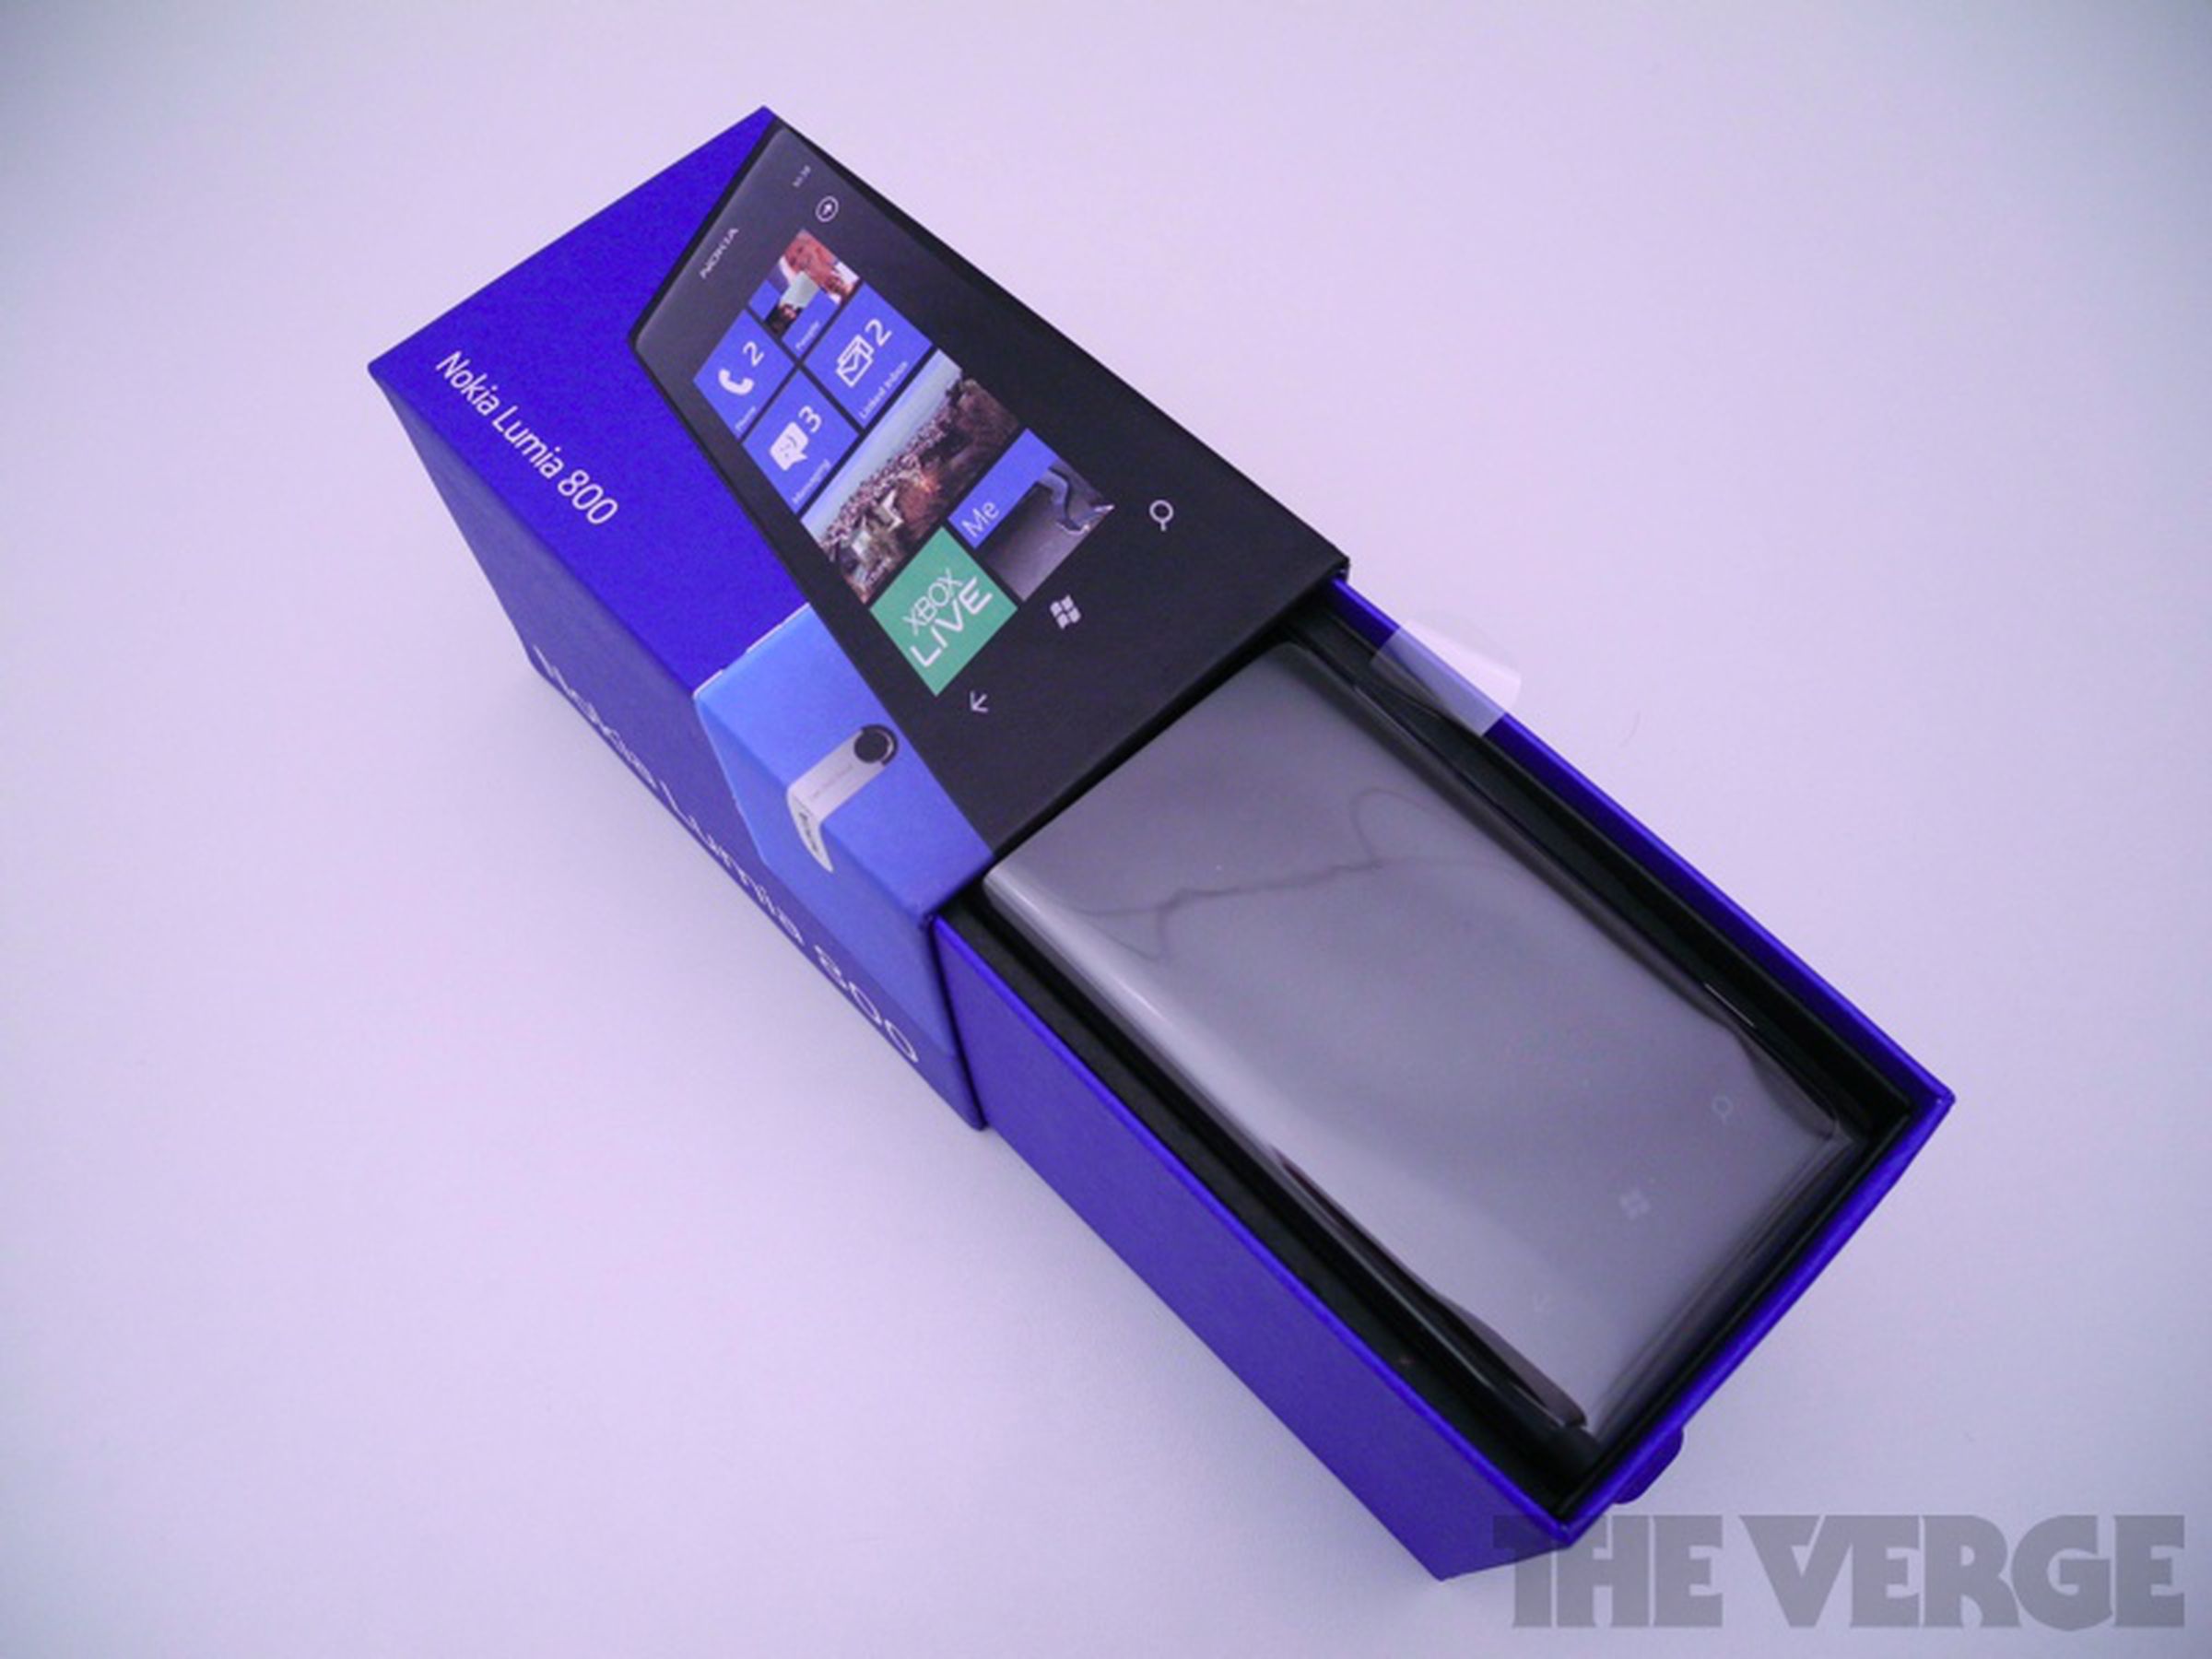 Nokia Lumia 800 retail box photos